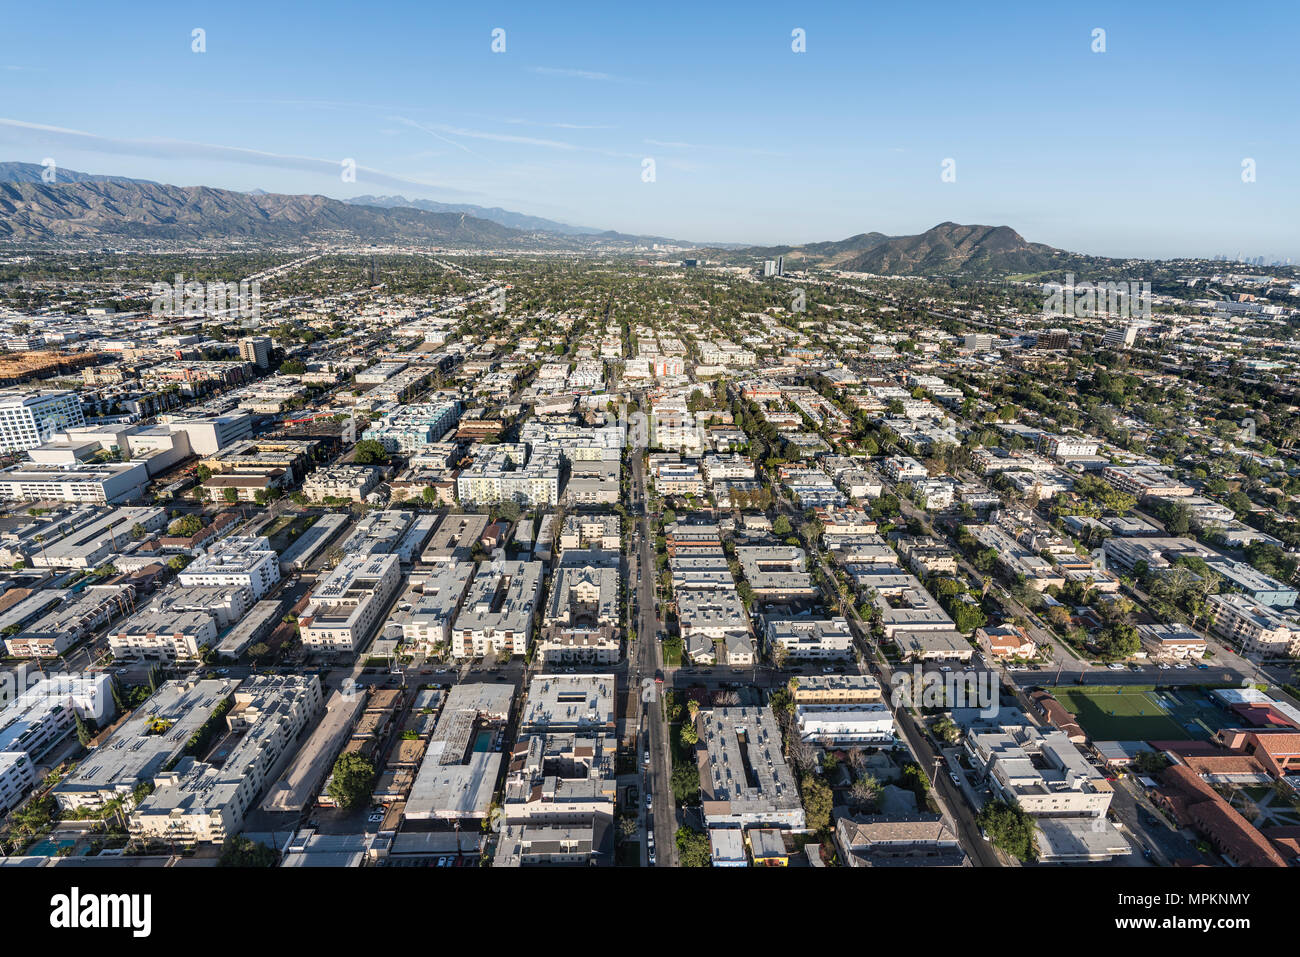 Vue aérienne de San Fernando Valley Homes, appartements et des rues dans le quartier de North Hollywood de Los Angeles, Californie. Banque D'Images